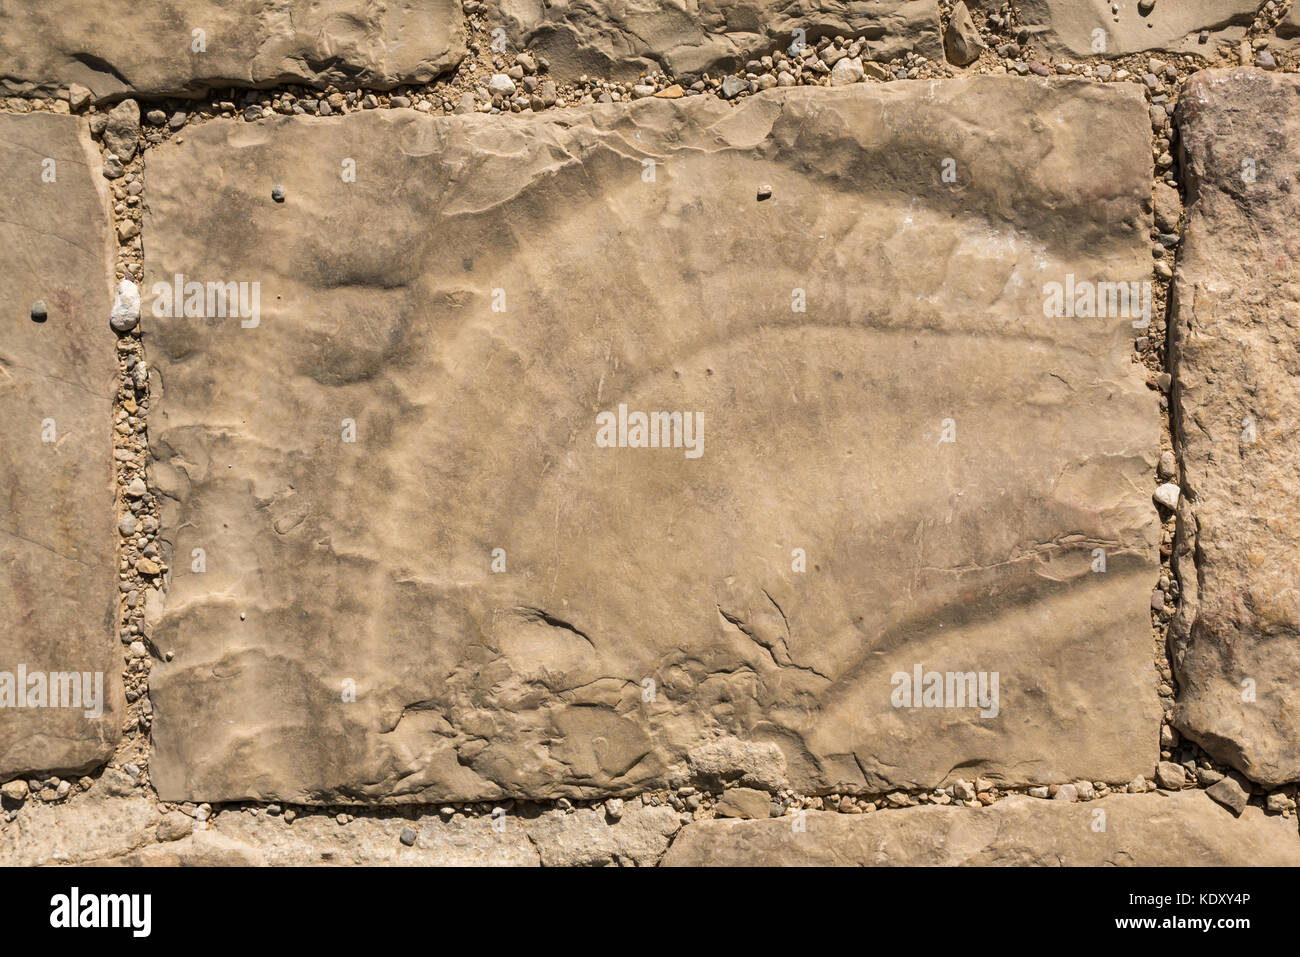 Cerca de grandes amonita fósil en el pavimento, el Monte Nebo, Jordania, Oriente Medio Foto de stock